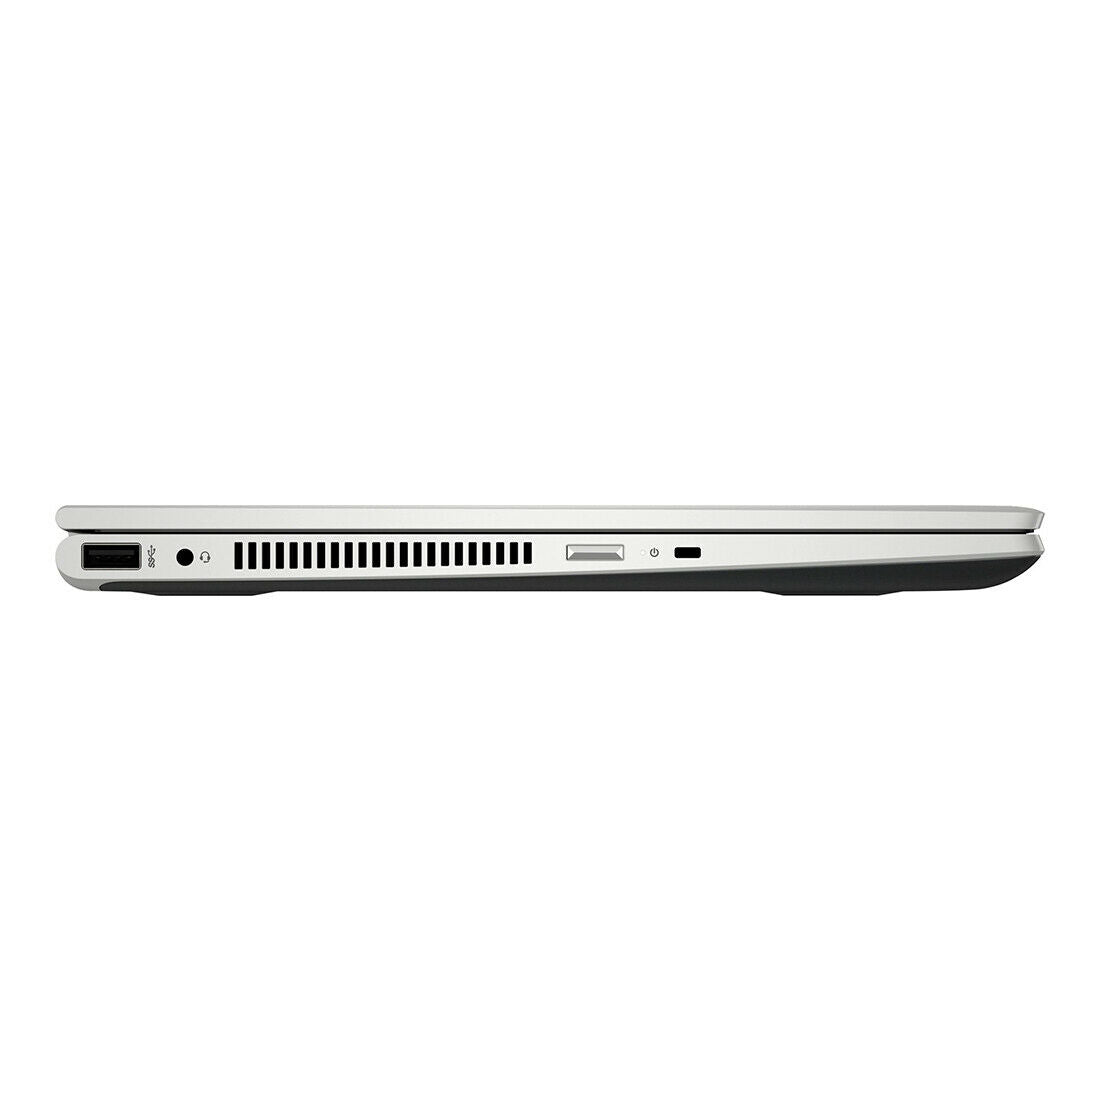 HP Pavilion x360 14" Laptop AMD E2-9000e 1.5GHz 4GB/128GB 14M-CD0001DX, Silver